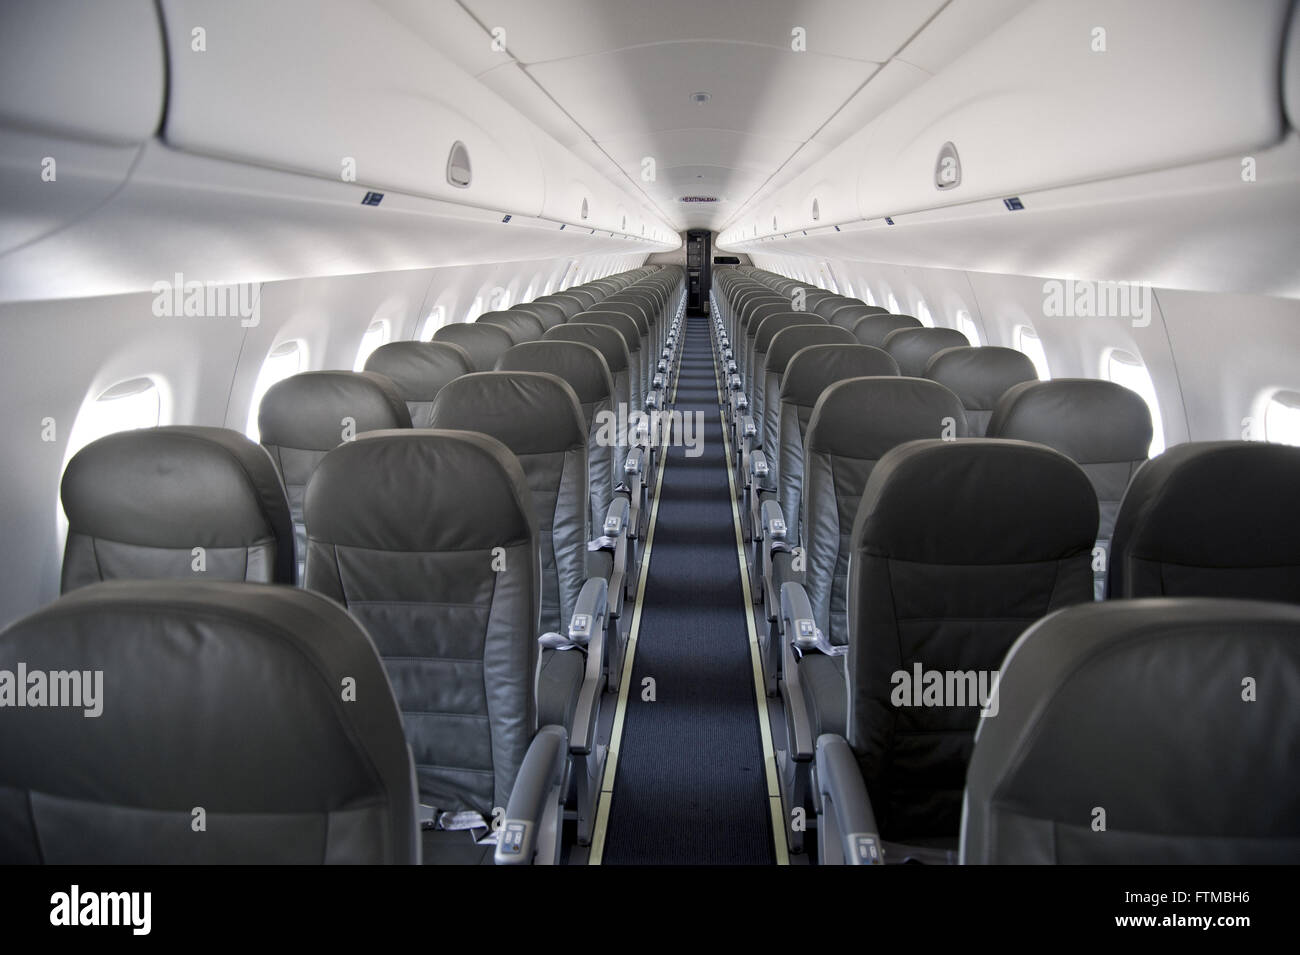 Interior modello di aeromobile EMB-195 Embraer Foto Stock